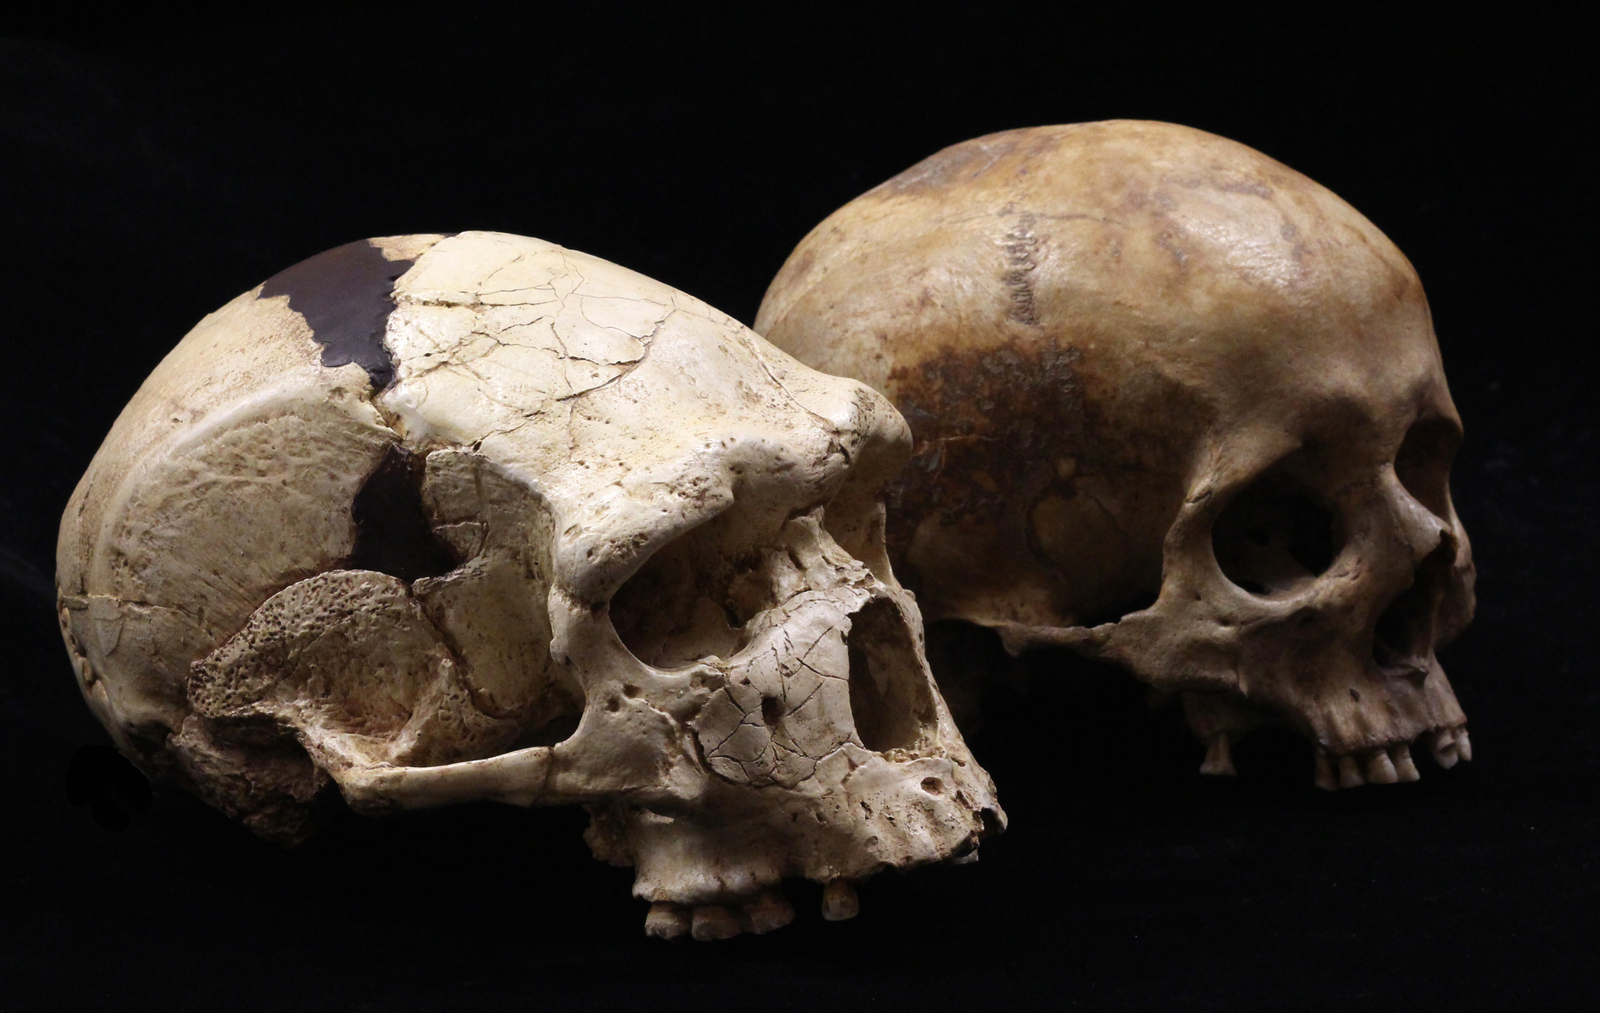 Arago 21 (à gauche) possède un crâne plus allongé (que l’Homo sapiens) provenant en partie de son front oblique